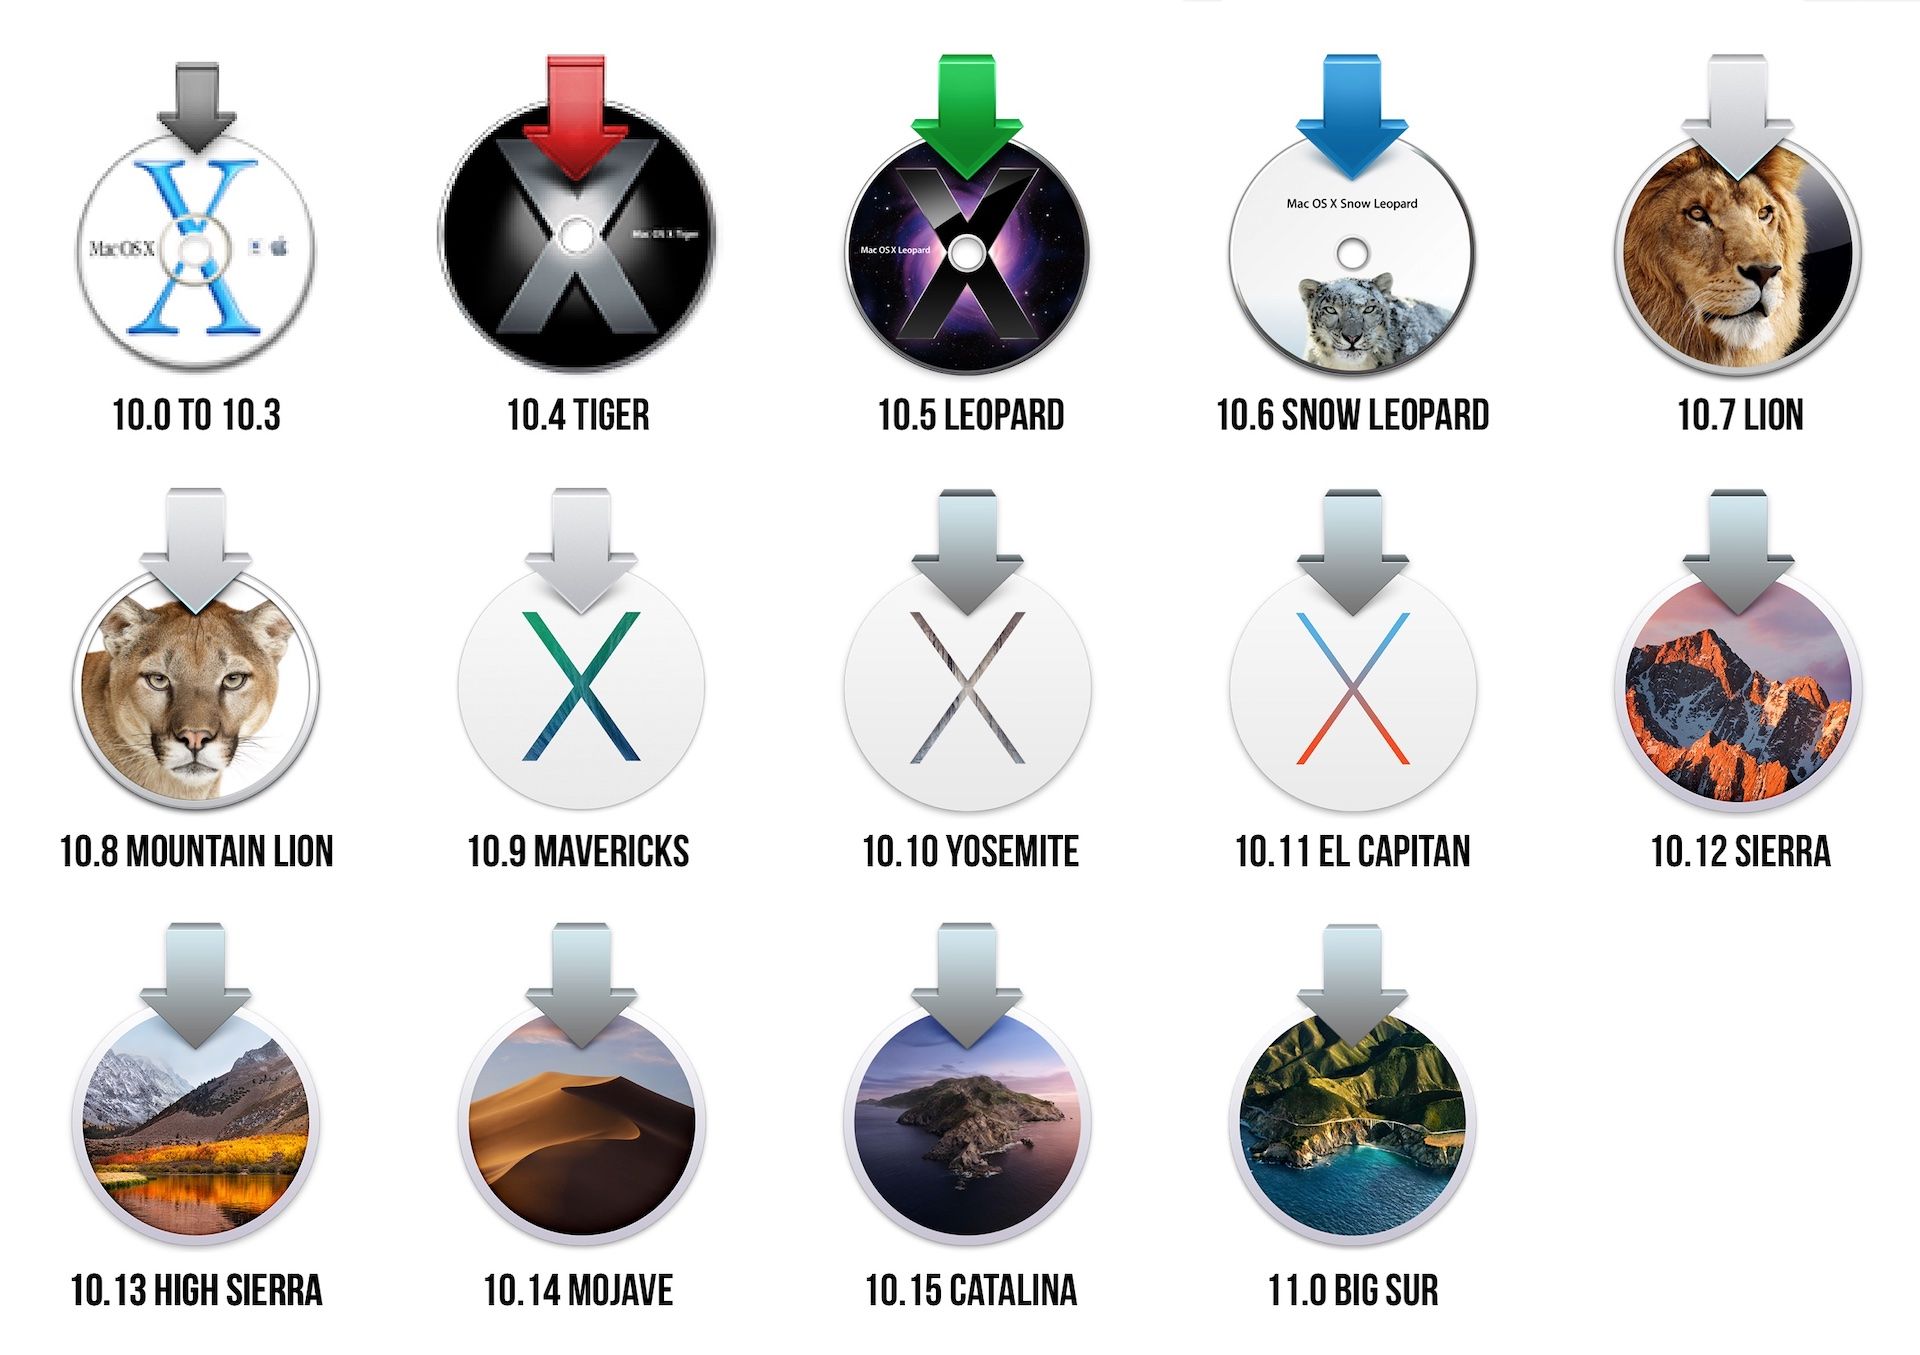 Evolução do Mac OS X | Fonte: Ars Technica